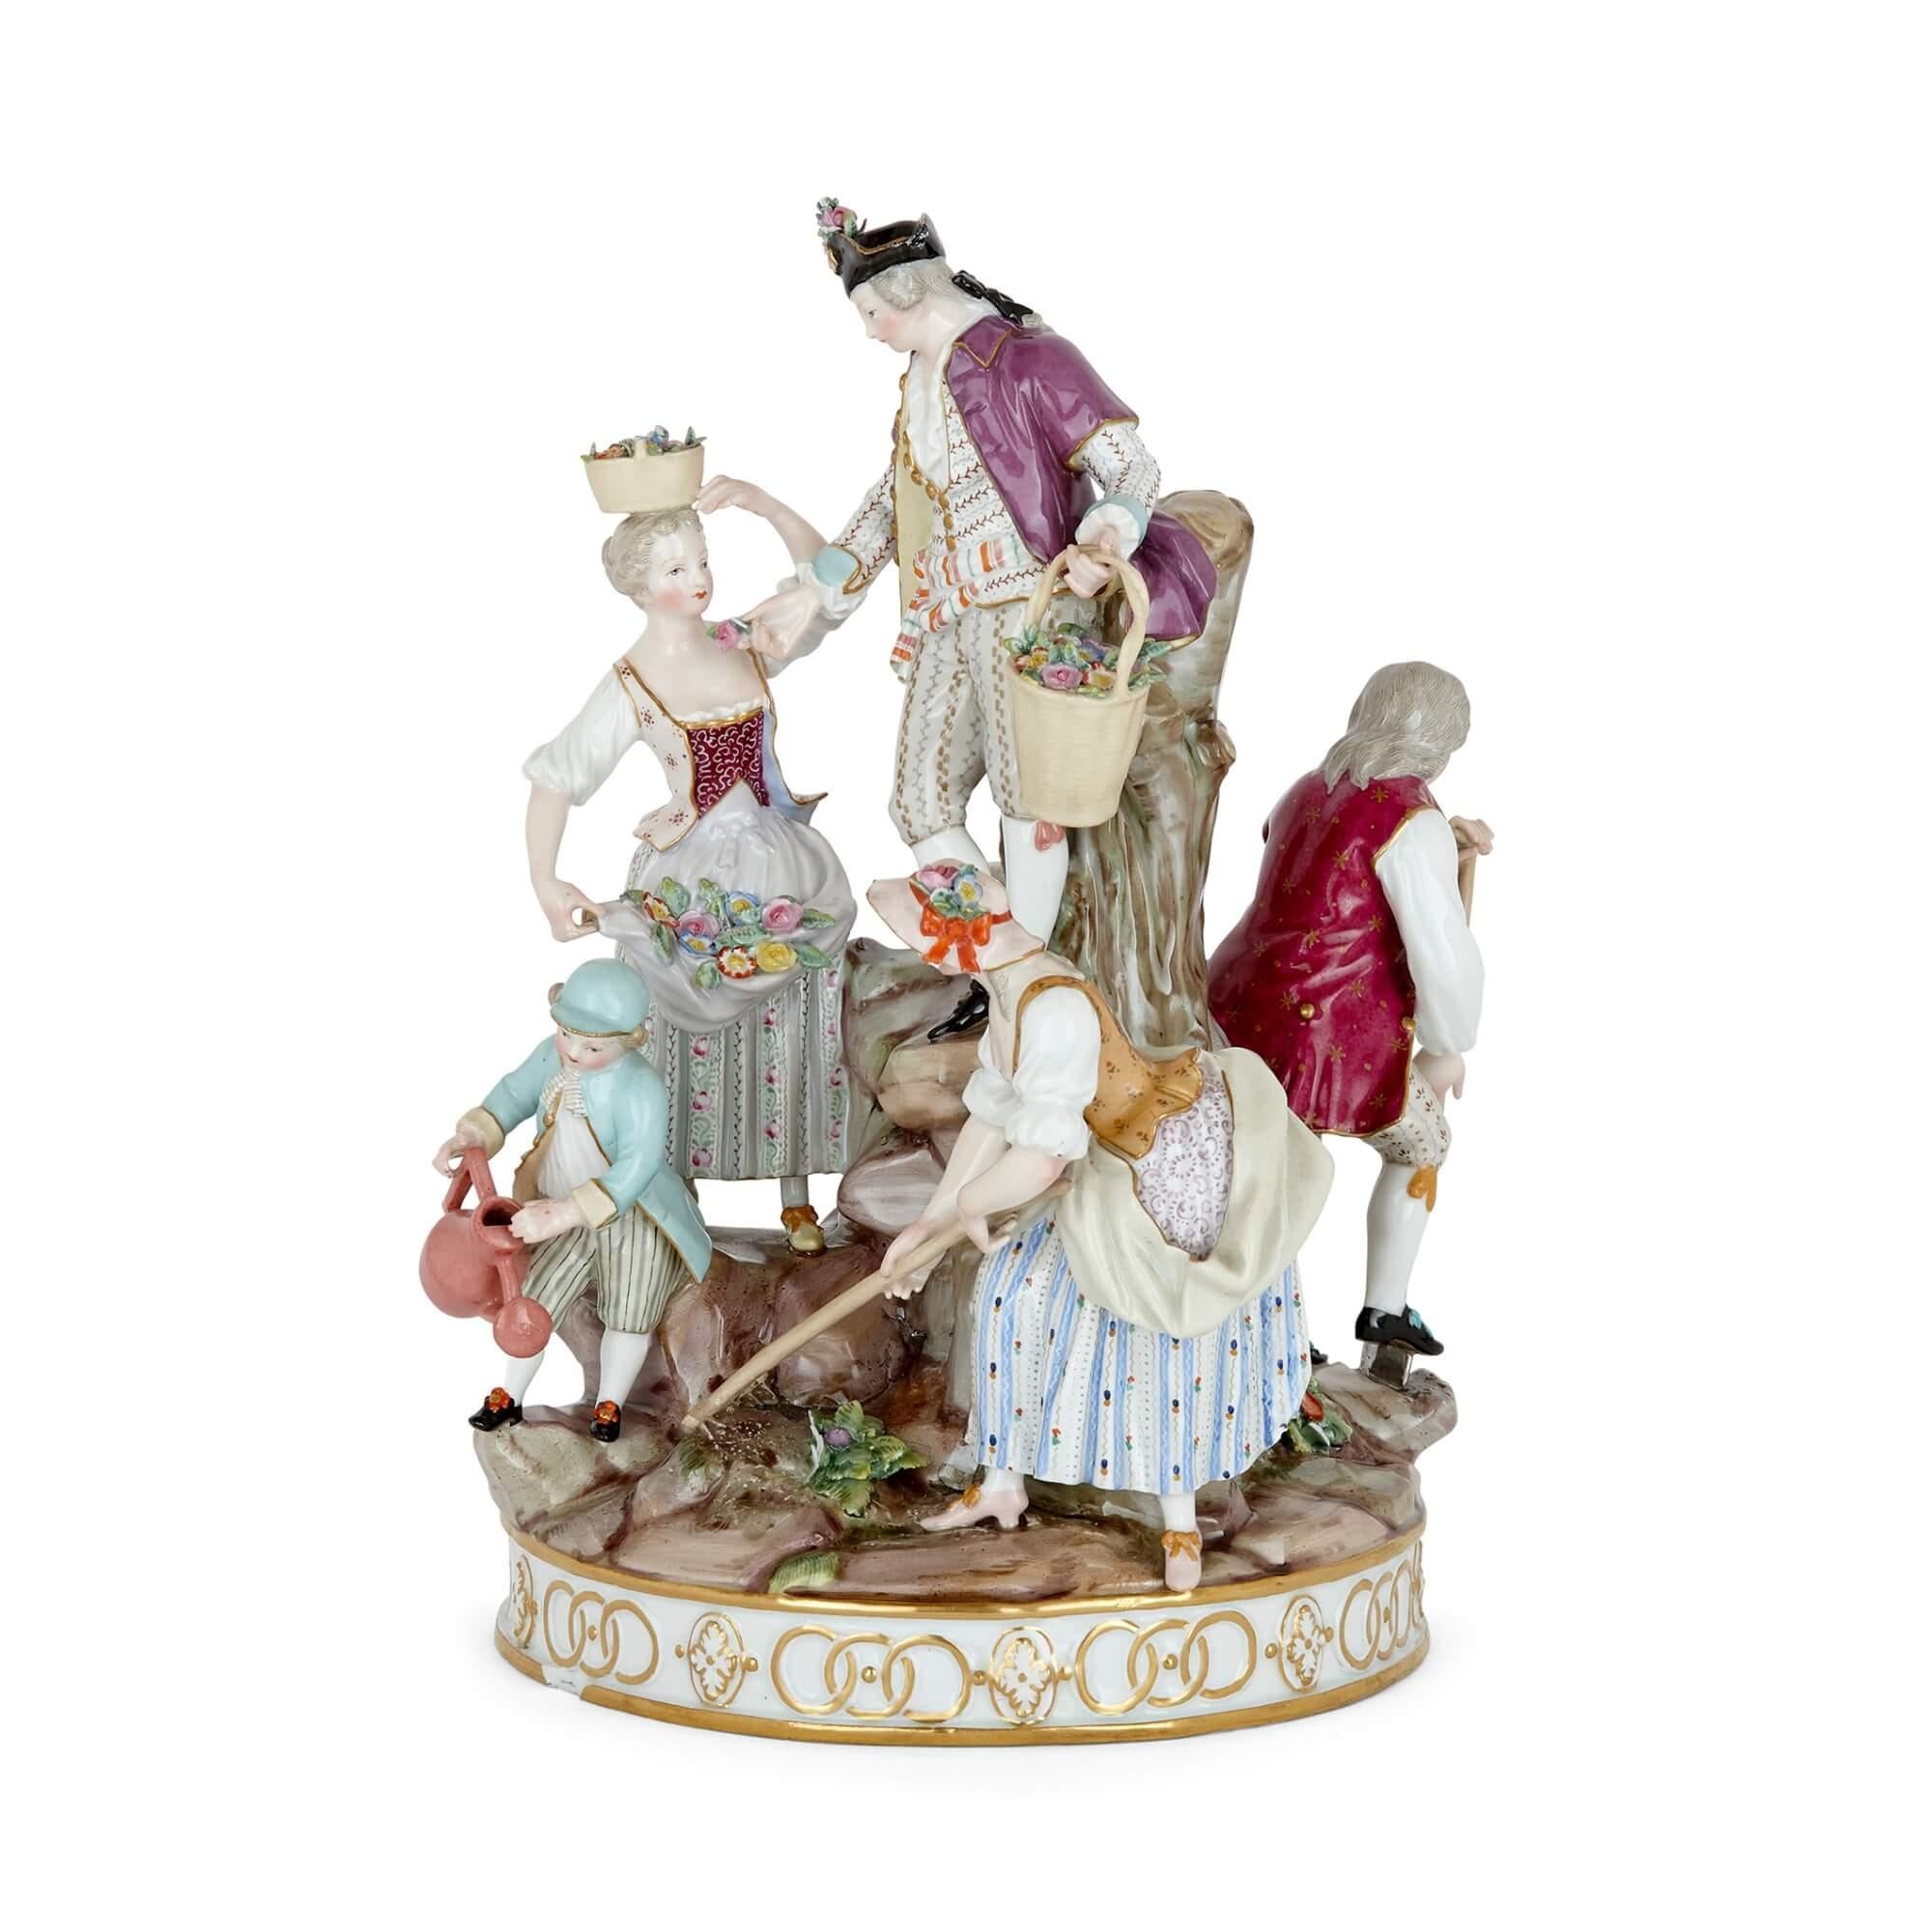 D'après un modèle de 1772 par M.C. Avier et J.C. Schönheit, ce charmant groupe en porcelaine de la manufacture de Meissen représente un groupe de cinq personnages autour d'un monticule rocheux central, impliqués dans diverses activités idylliques